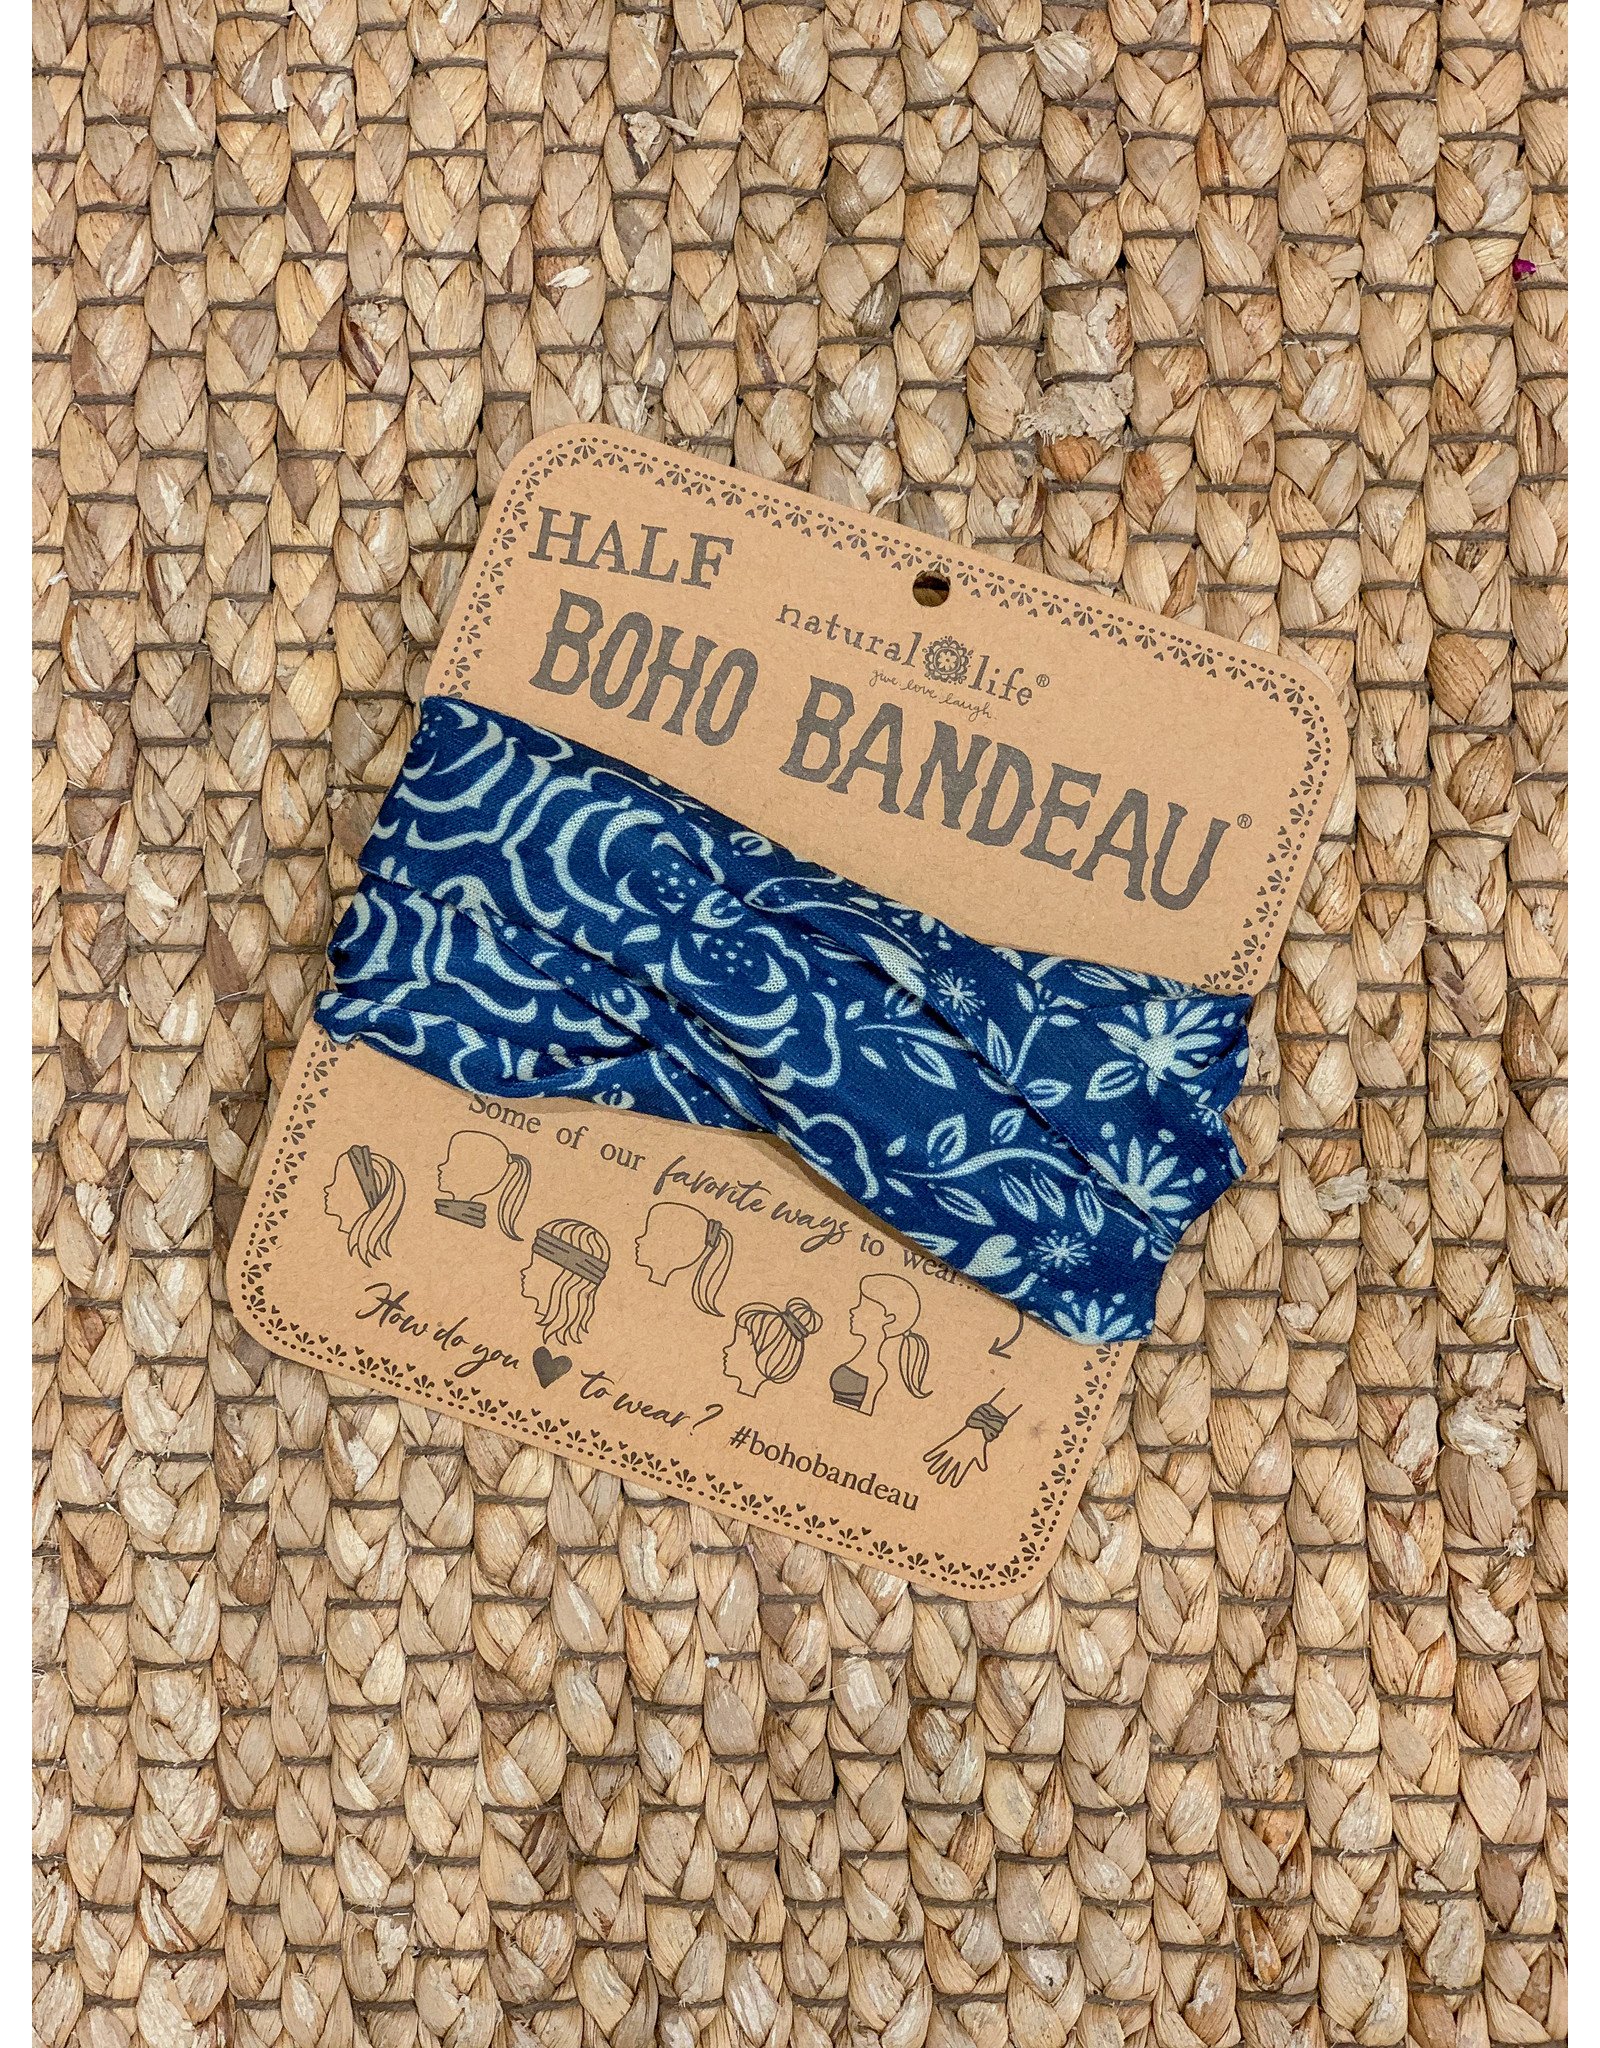 Natural LIfe Half Boho Bandeau, Navy & Cream Mandala